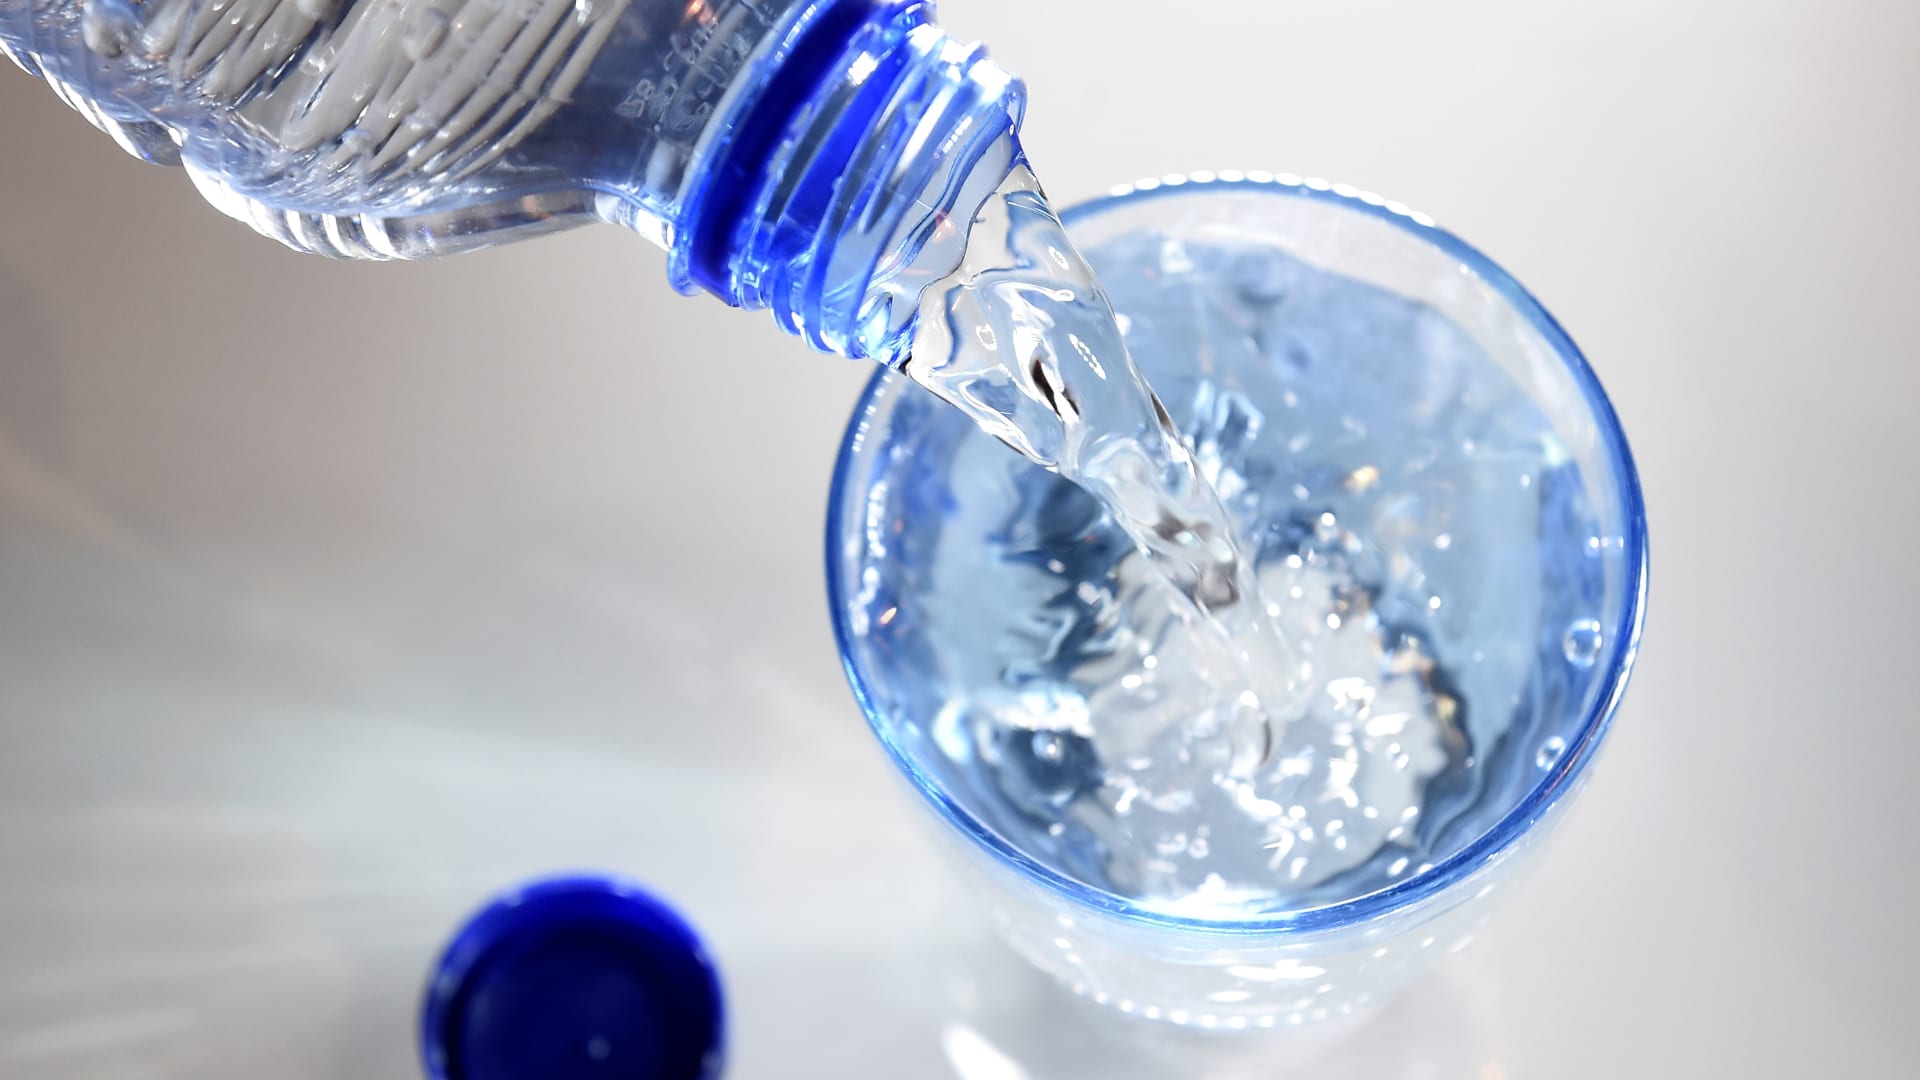 كيف يؤثر شرب الماء جيدا على خطر الإصابة بالأمراض والشيخوخة بشكل أسرع والموت المبكر؟